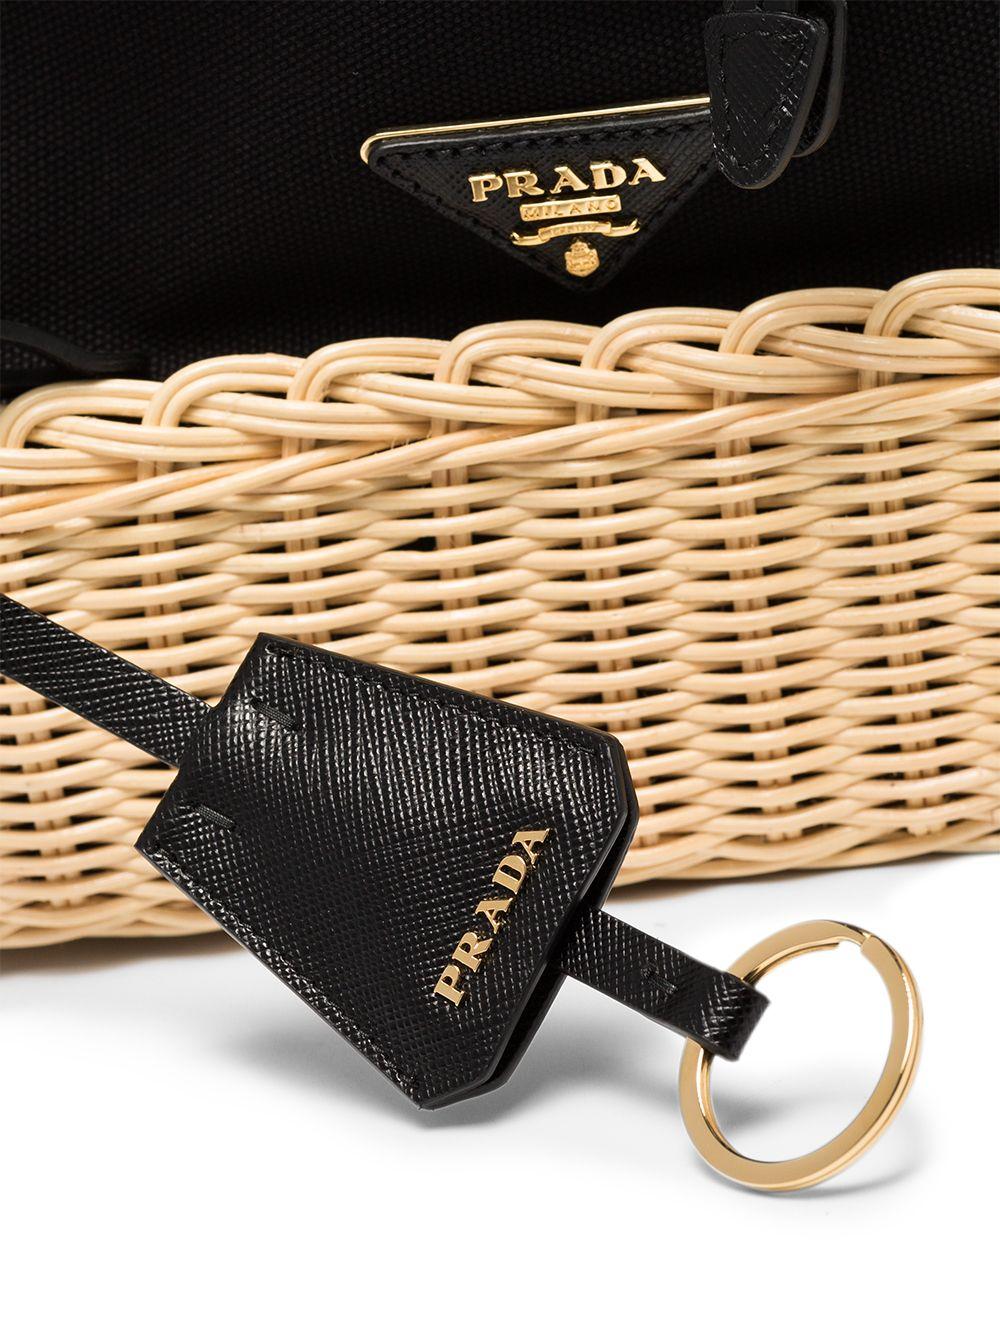 Prada Middolino Suede And Raffia Basket Bag in Black | Lyst Australia